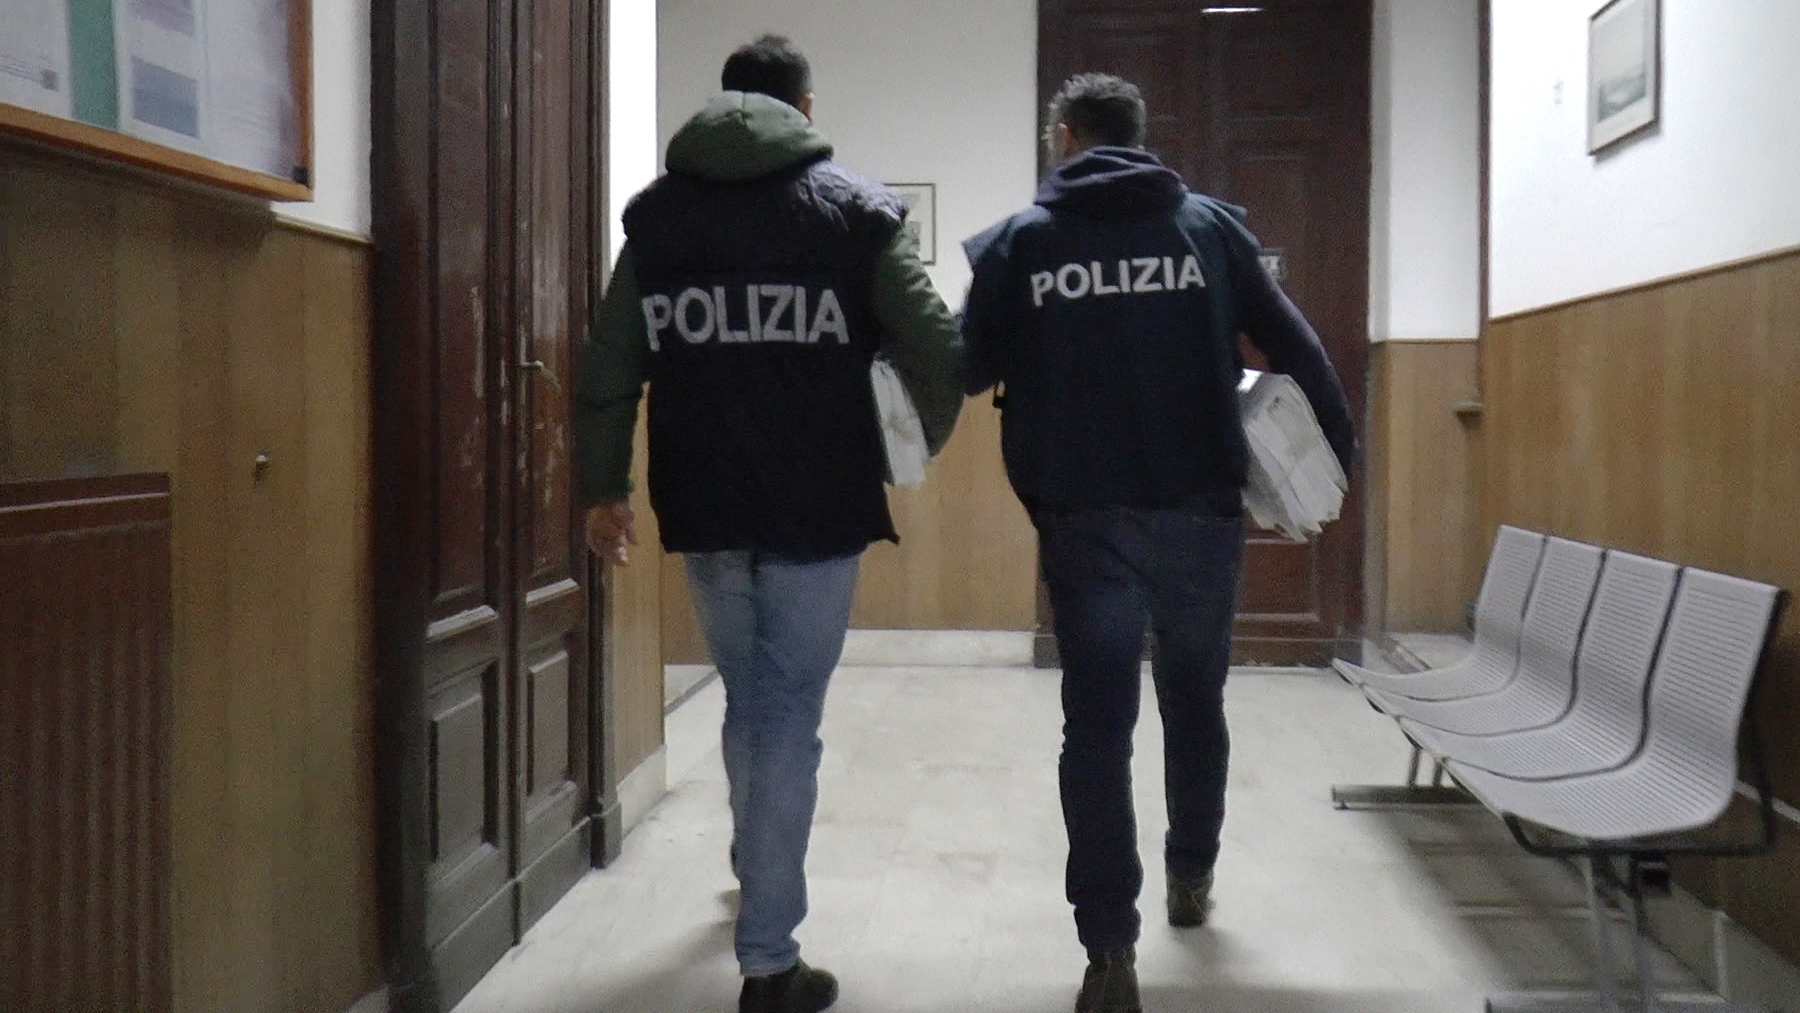 Si introduce nuovamente sul territorio italiano: tunisino respinto arrestato a Messina